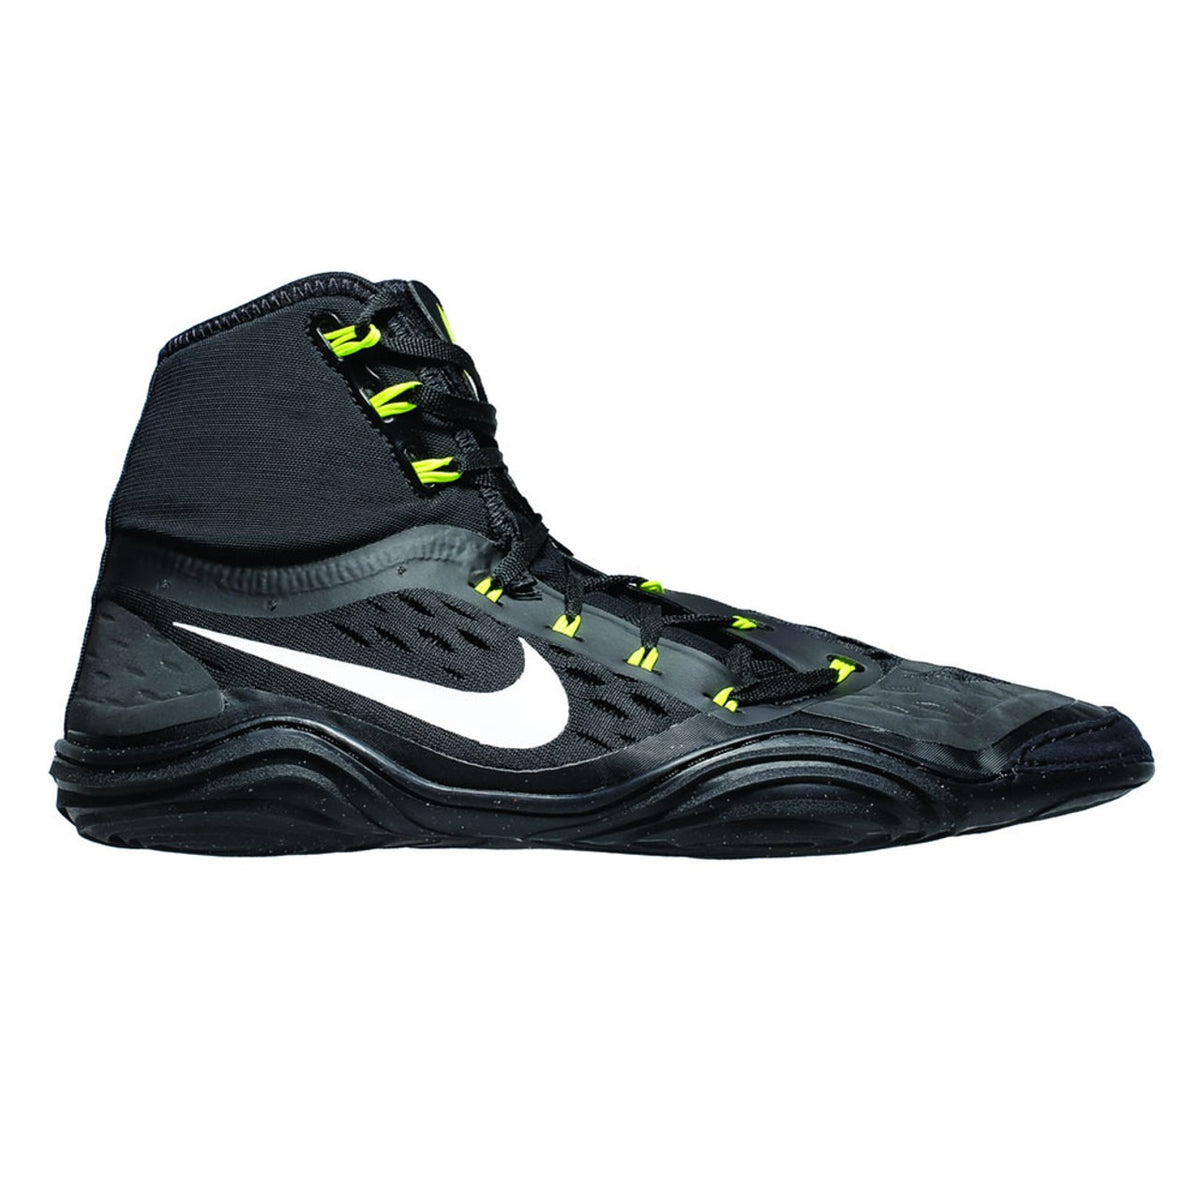 Nike rokoborski čevlji HYPERSWEEP LE. Profesionalni rokoborski čevelj za vse ambiciozne rokoborce. Z najnaprednejšo tehnologijo vam Nike Hypersweep zagotavlja dober oprijem na rokoborski blazini. Na treningu in tekmovanju. Tukaj v barvi črna/volt.